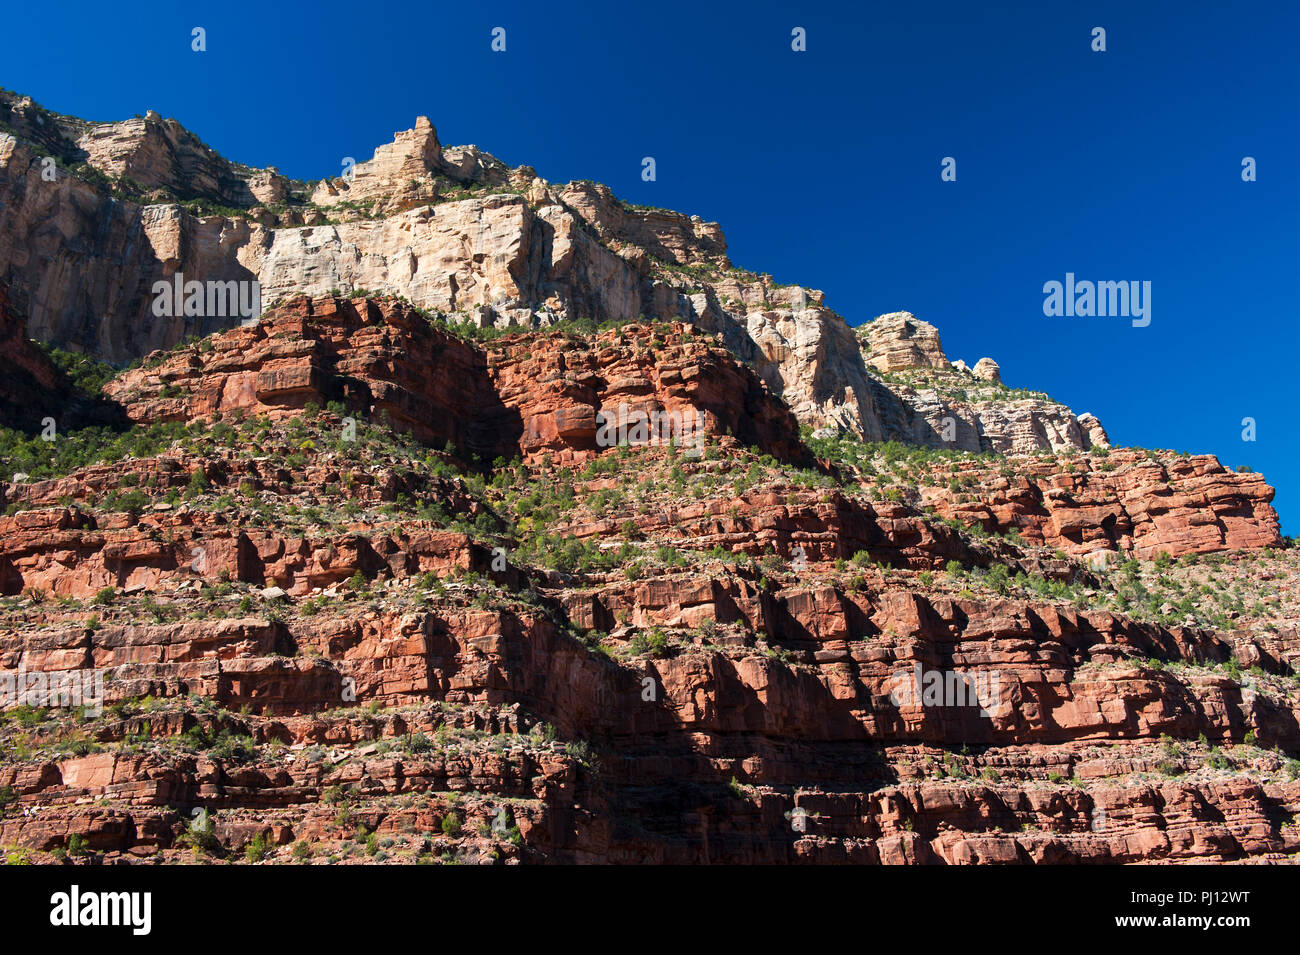 Le scogliere di pietra arenaria calcarea e visto dal Bright Angel trail, Grand Canyon, Arizona, Stati Uniti. Foto Stock